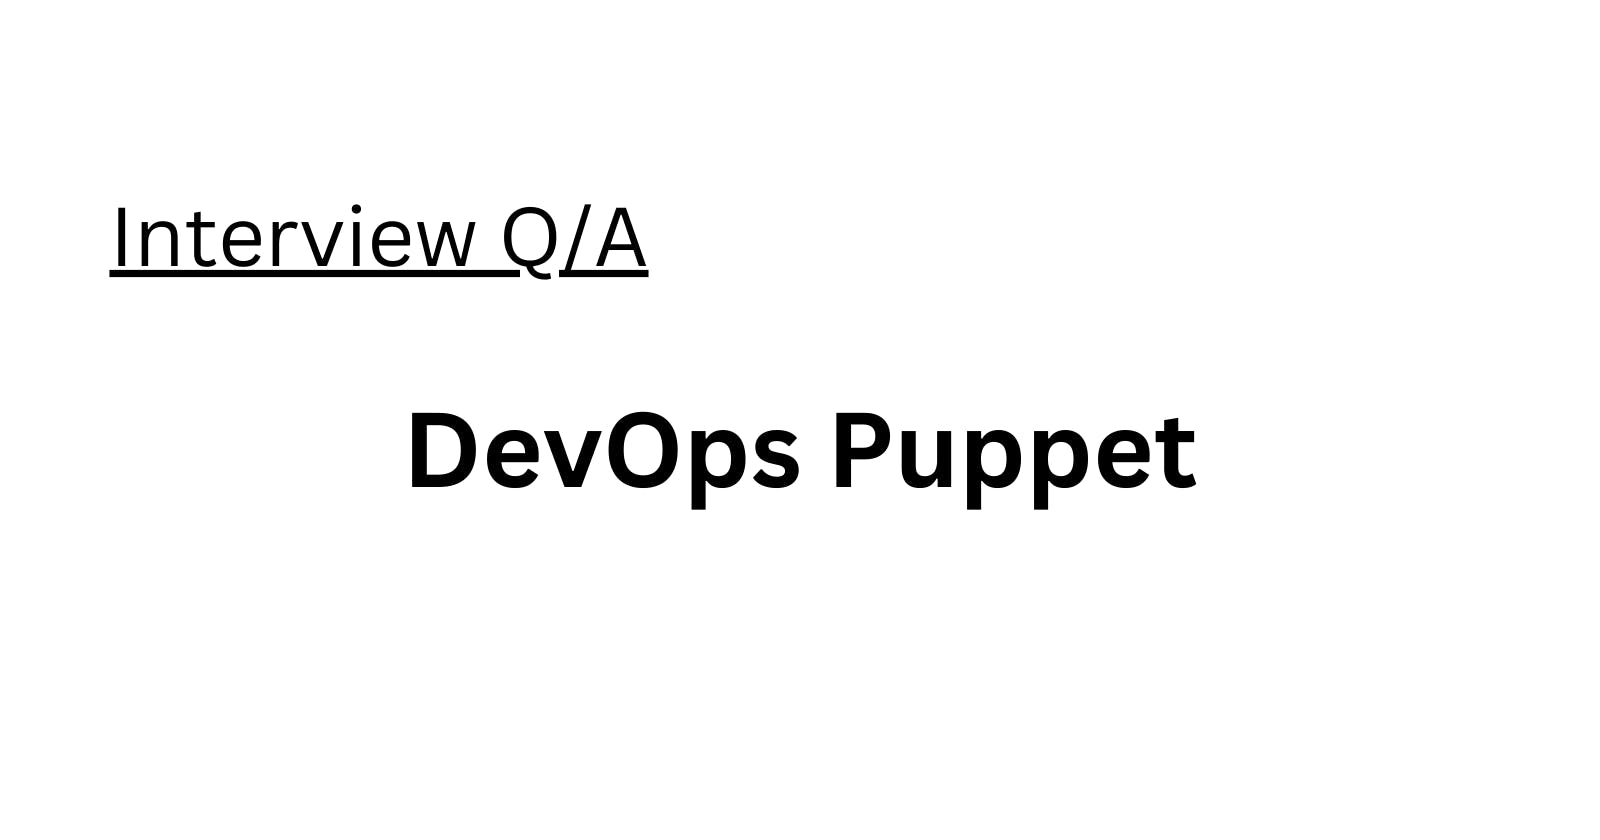 DevOps Puppet Interview Q/A